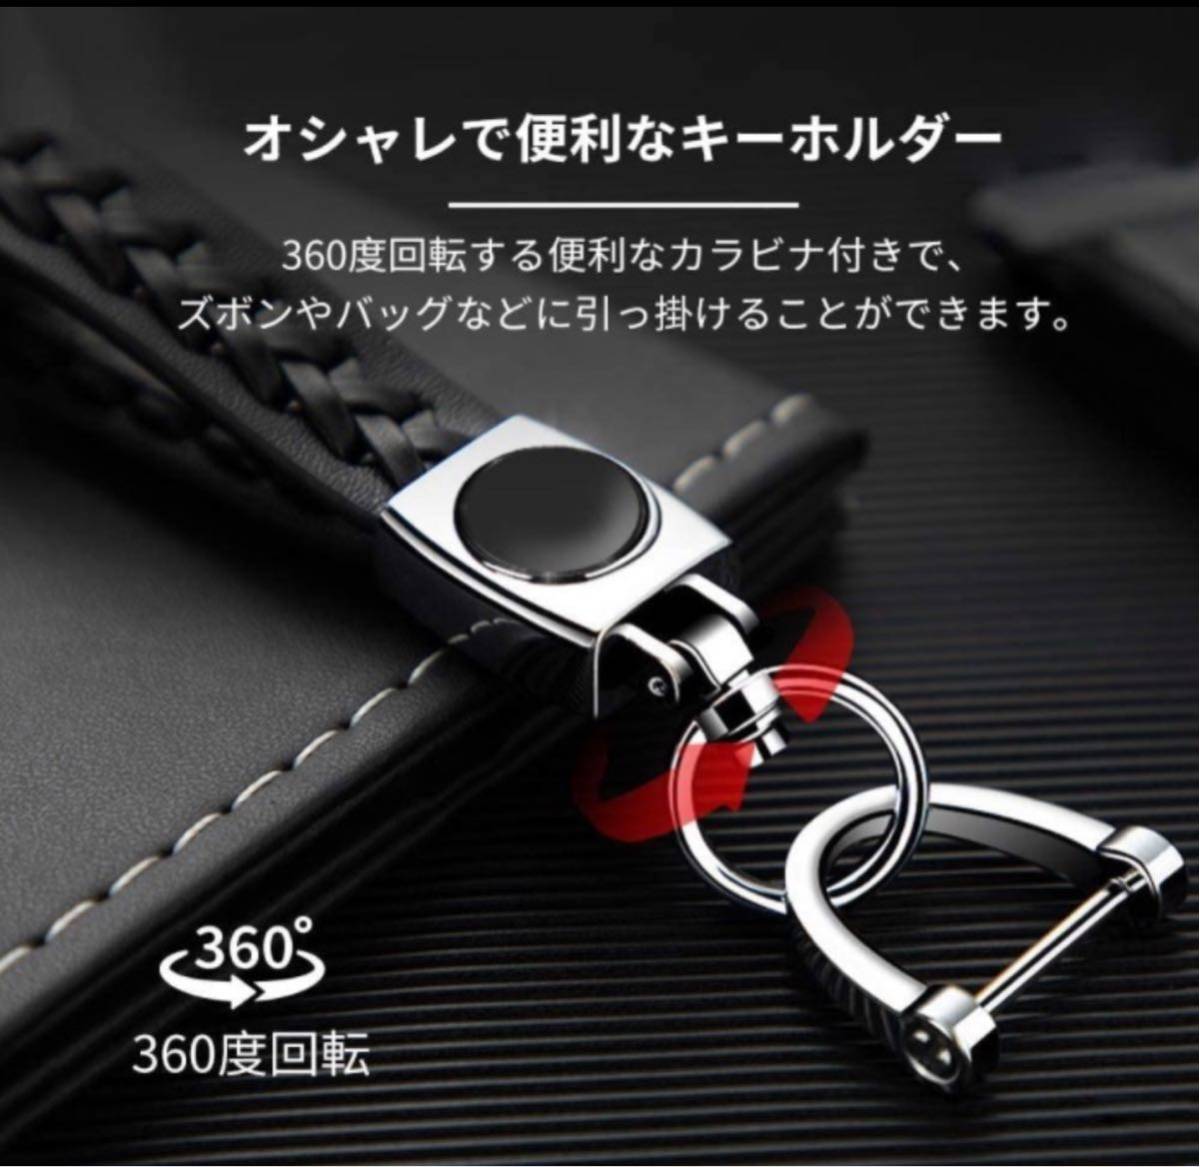  Mini Cooper key holder stylish original leather 